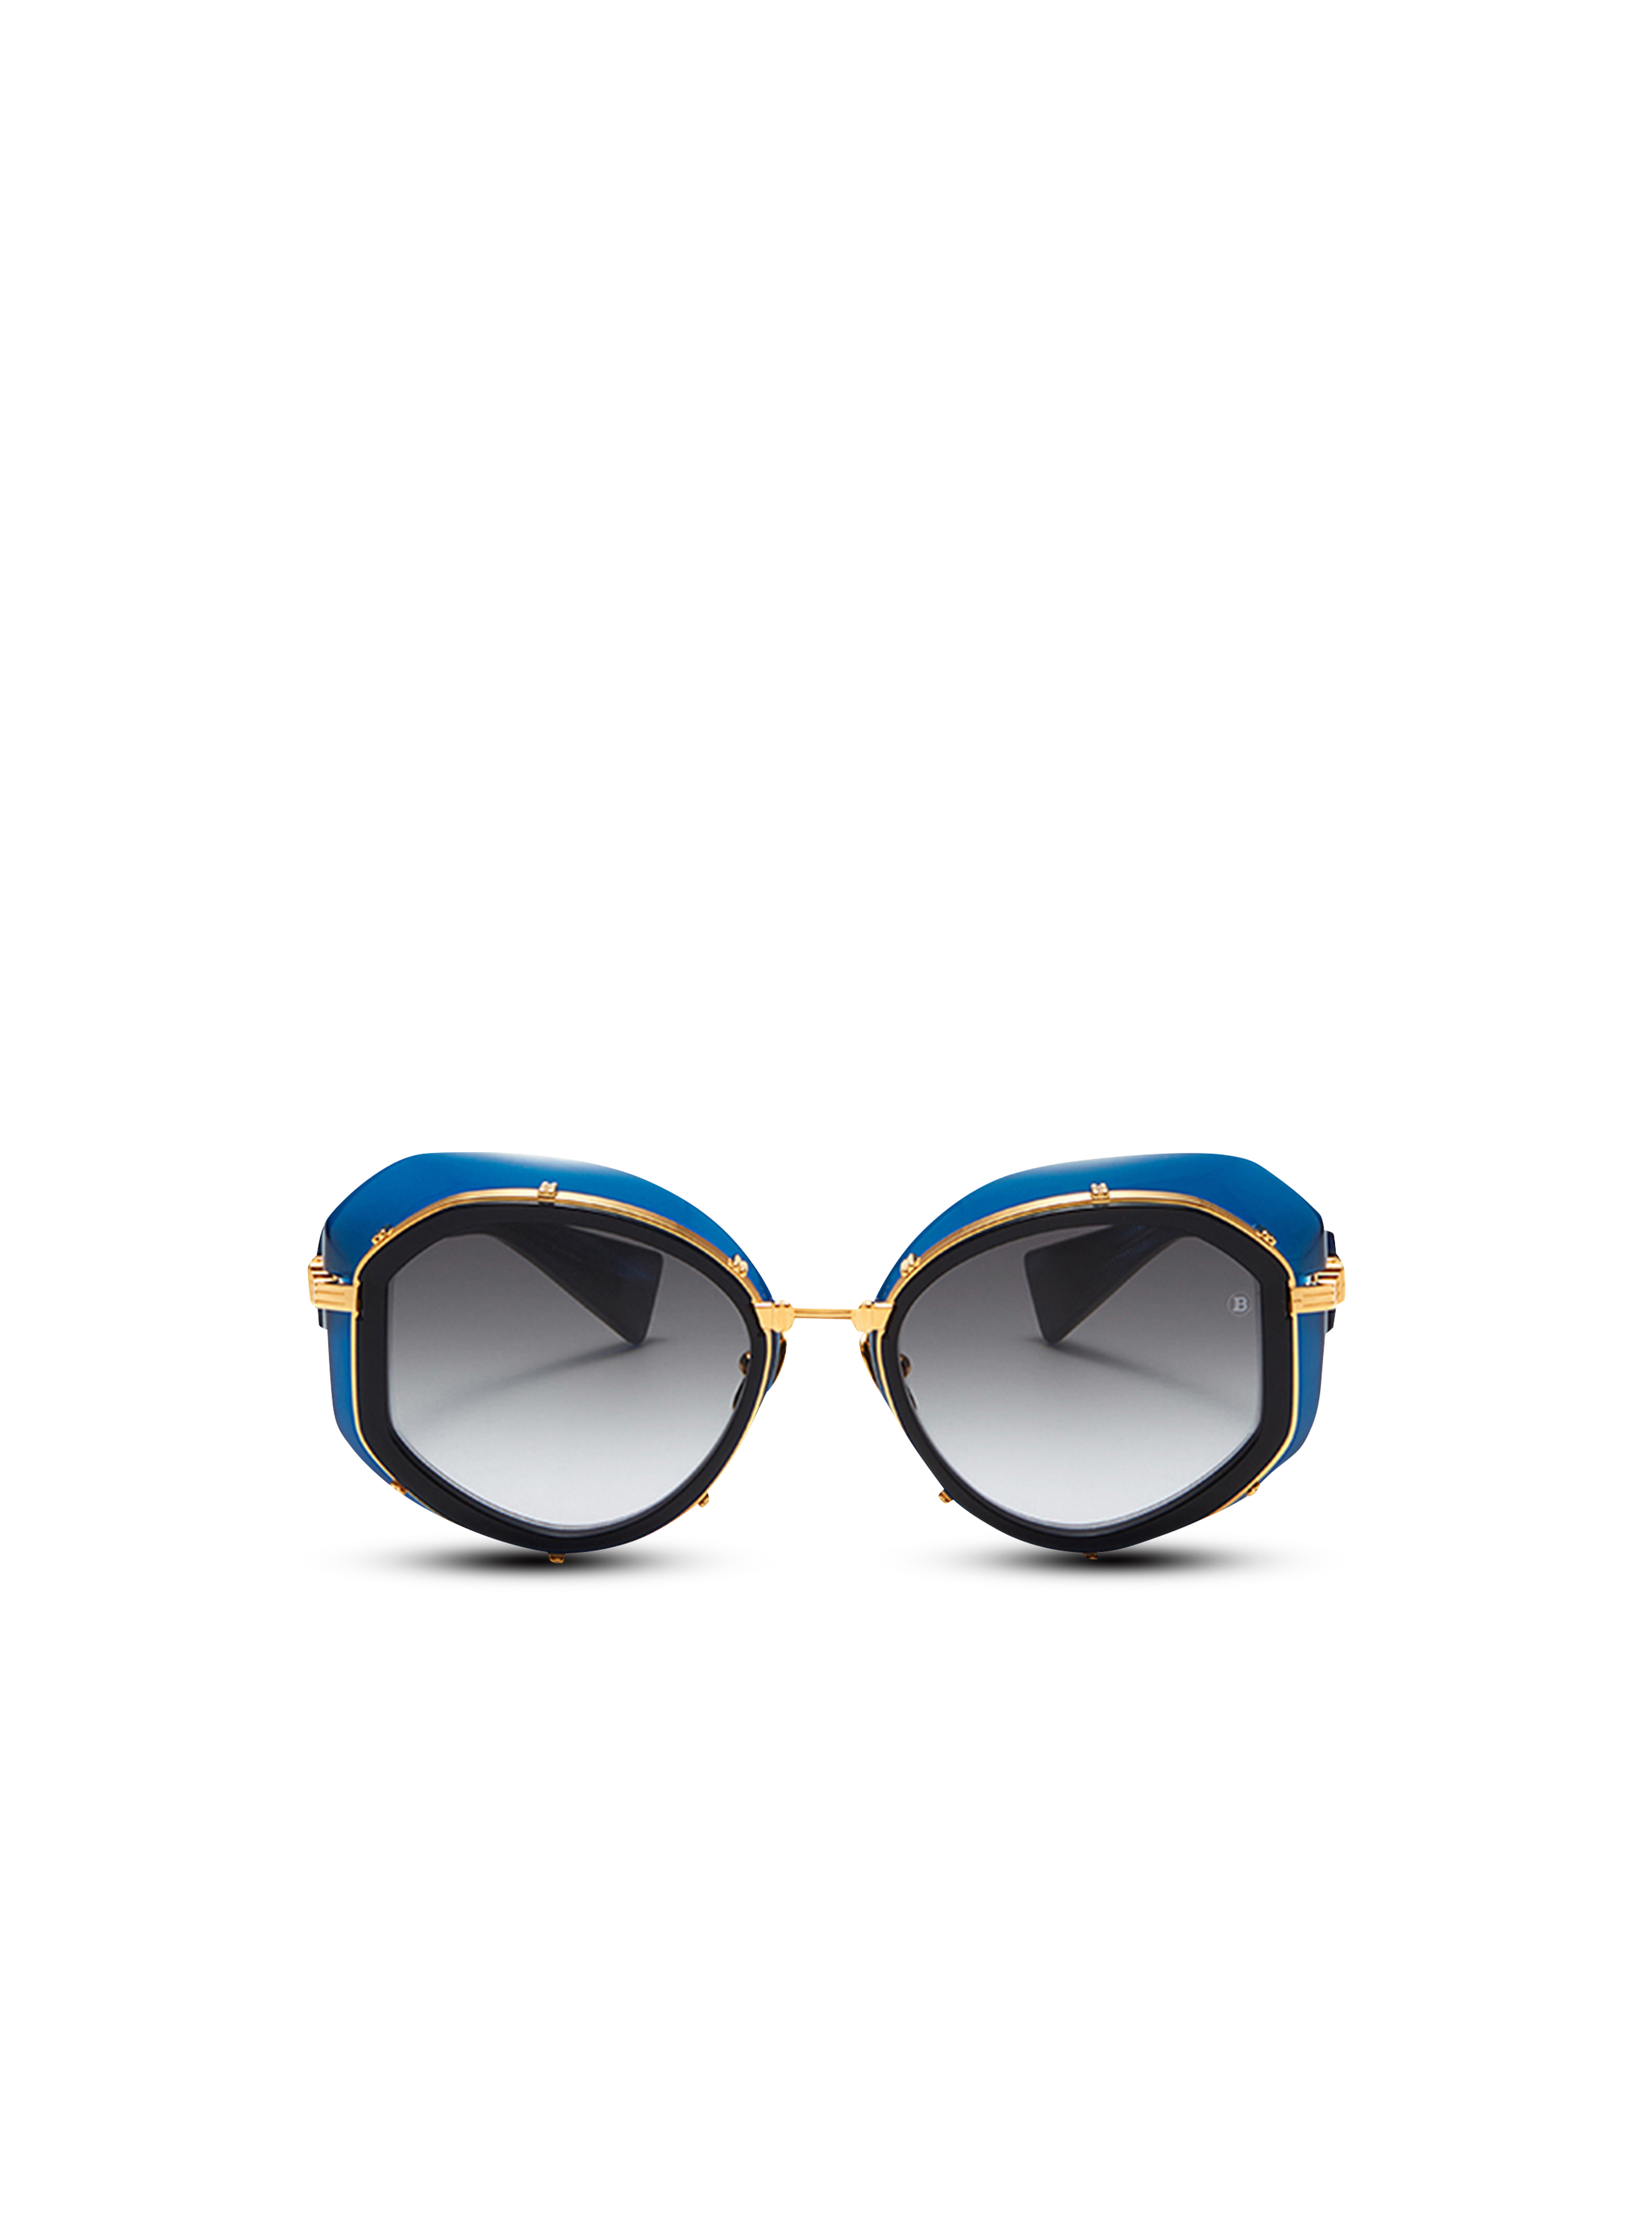 Gafas de sol Brigitte de titanio, azul